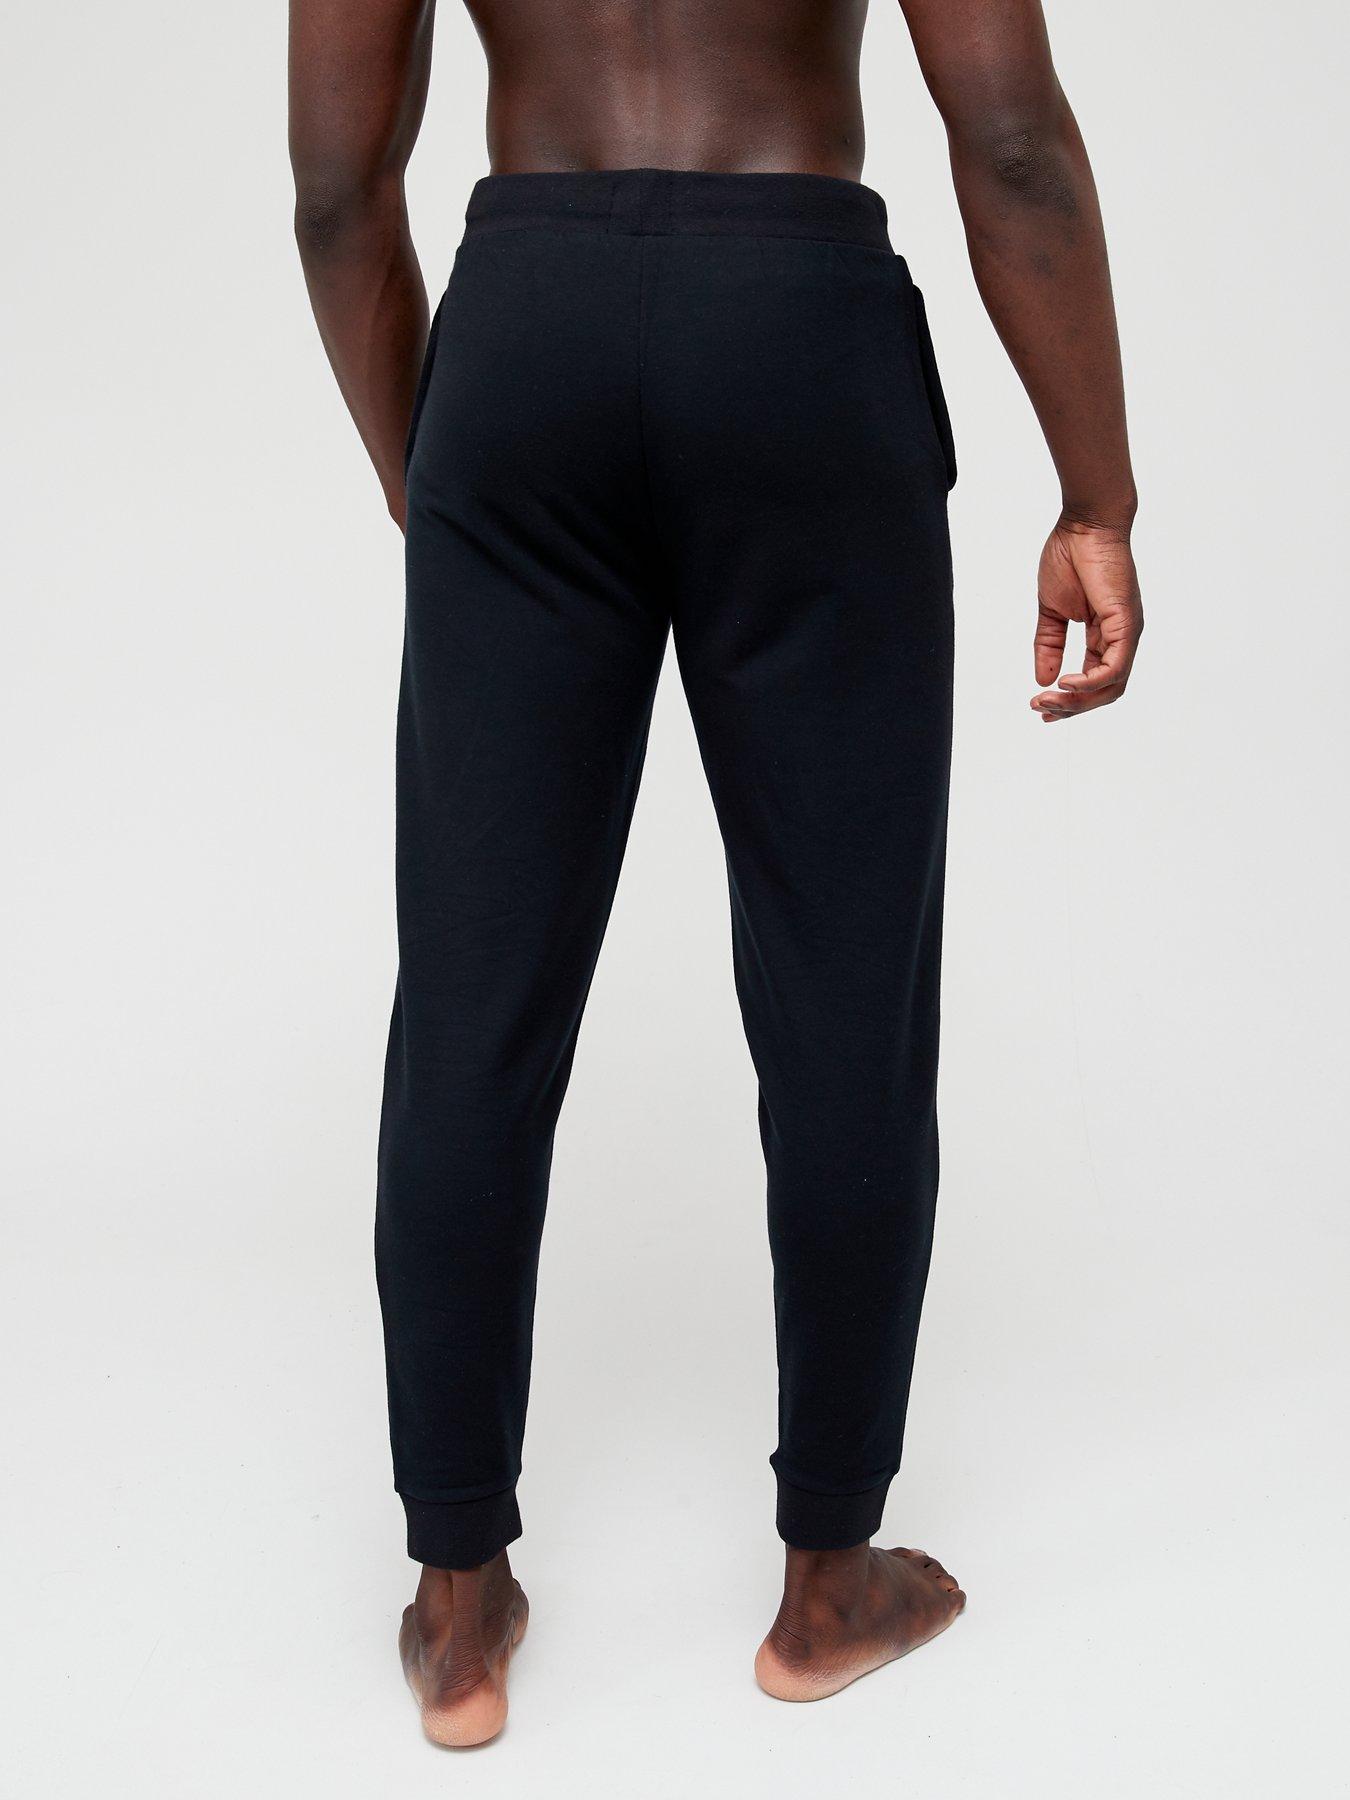 Men Fashion Lounge Pants - Black